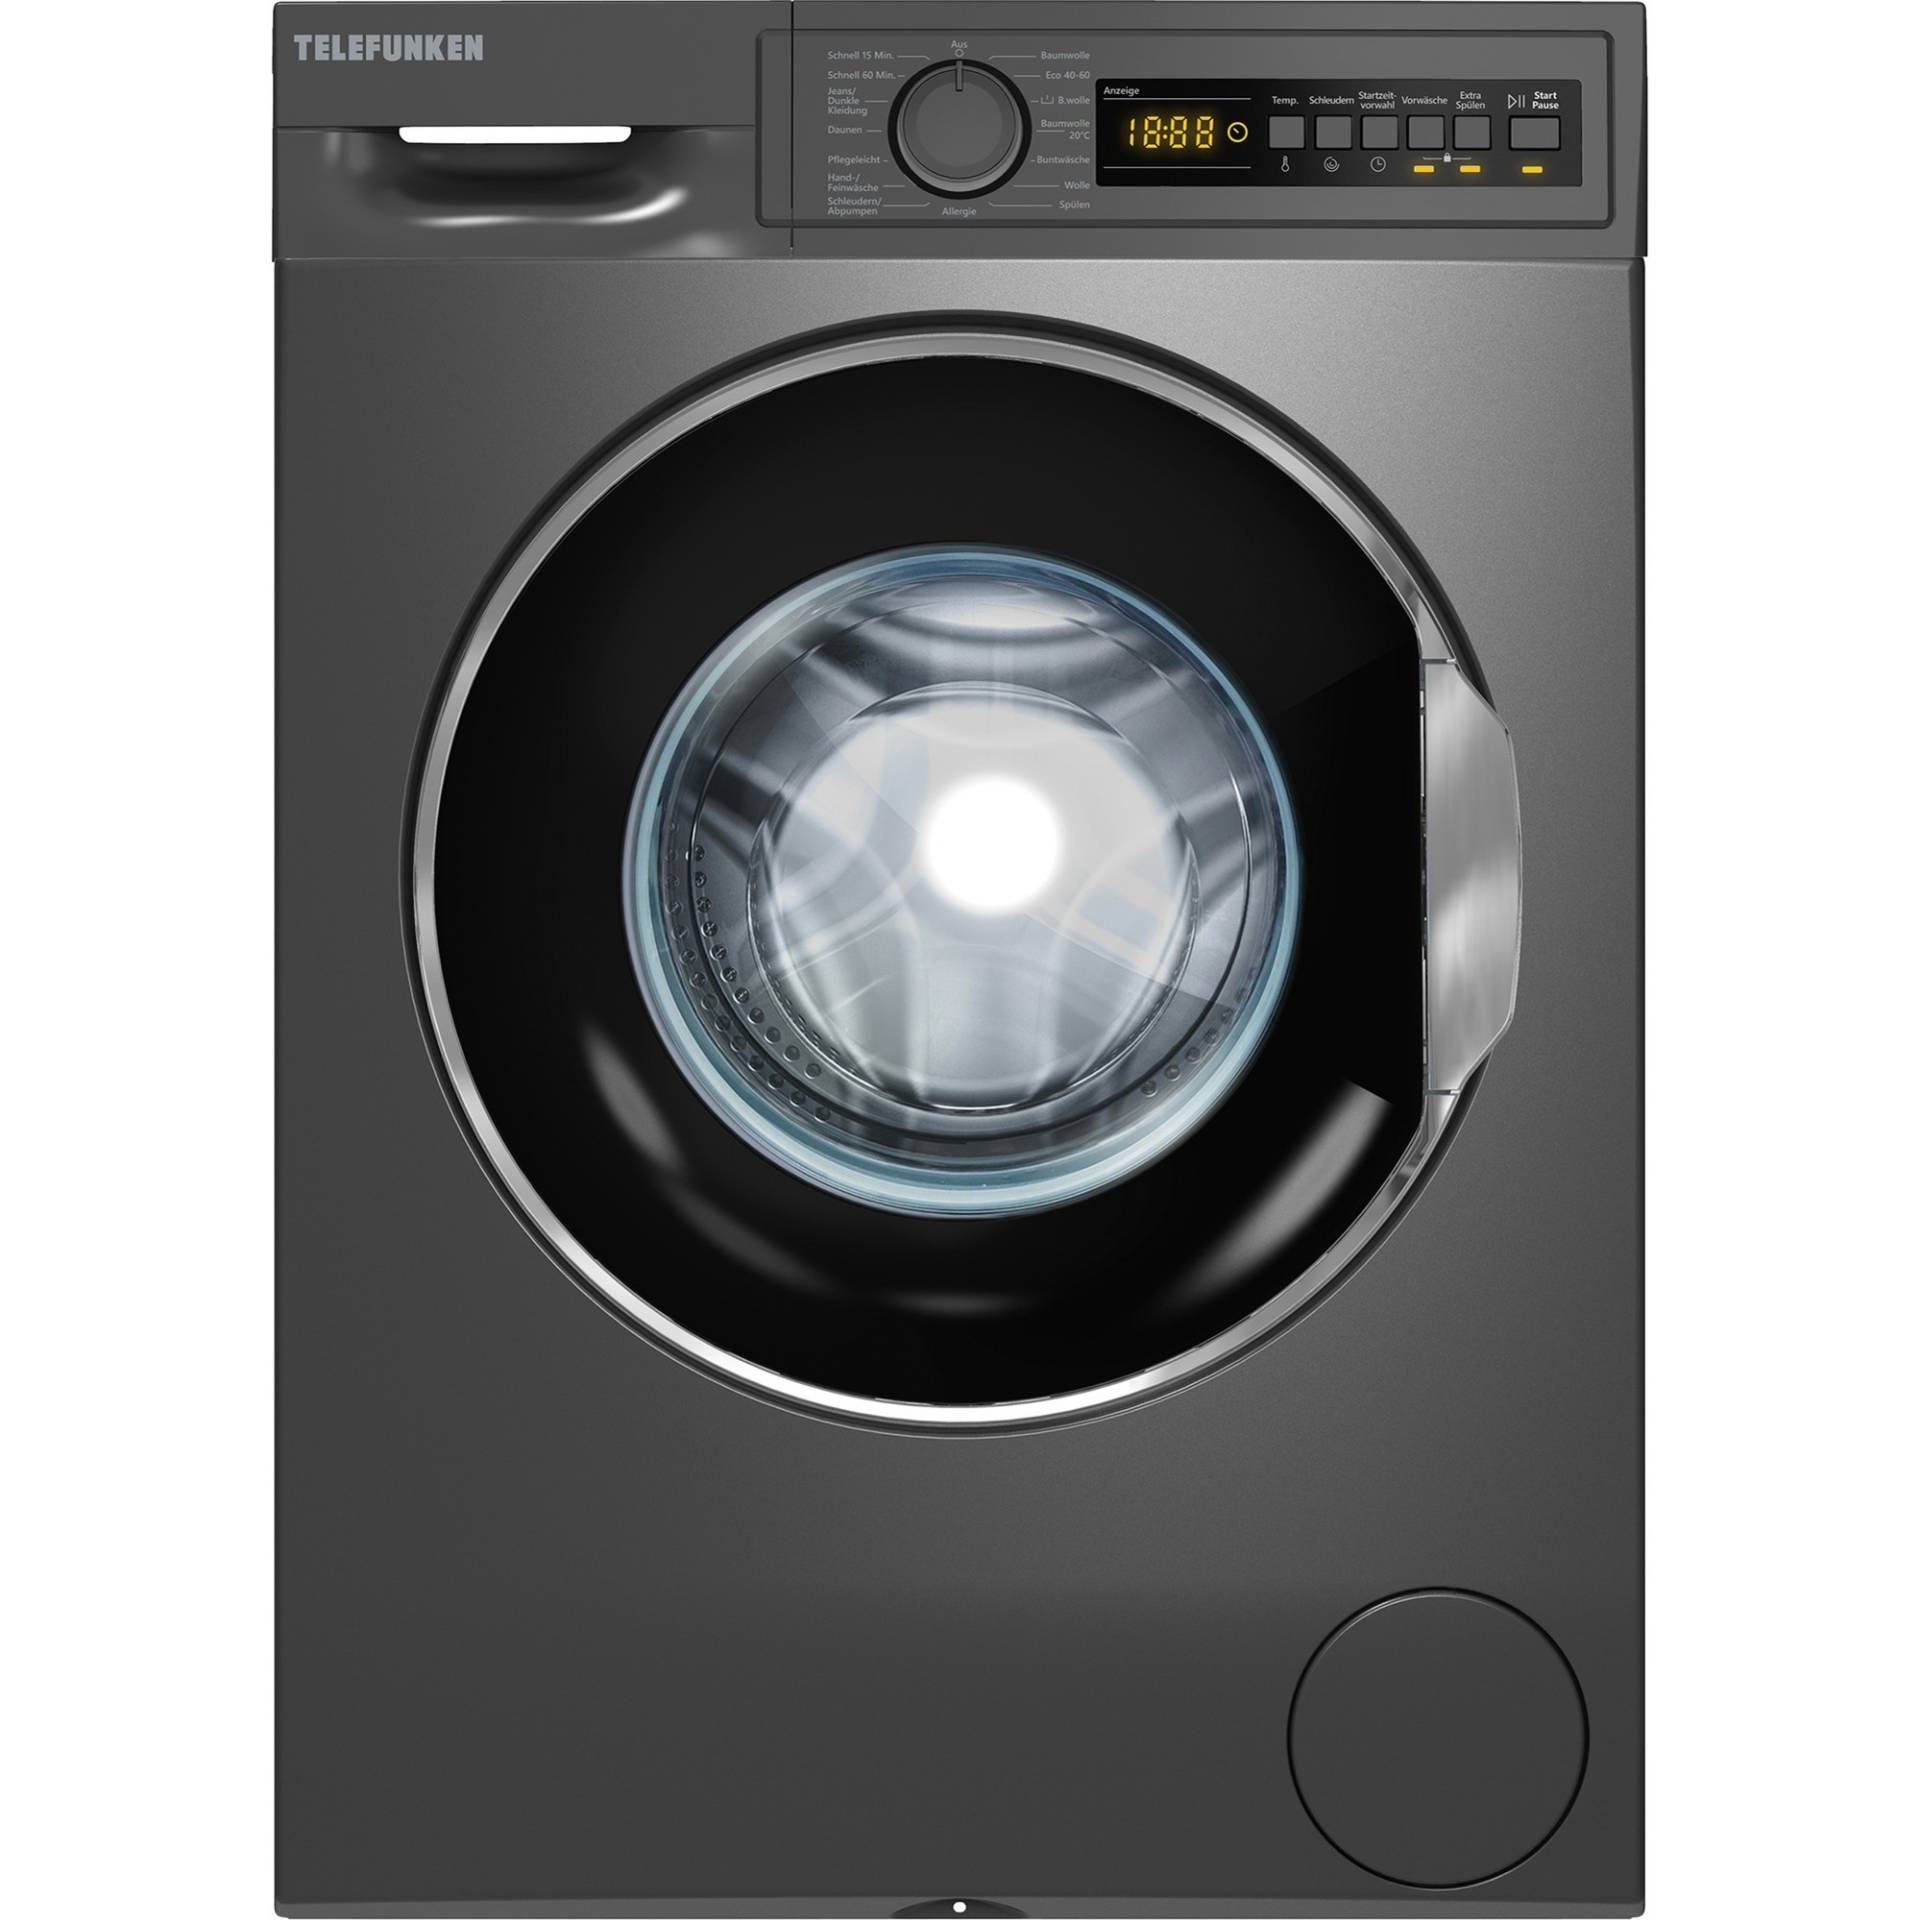 W-8-1400-A0-DI, Waschmaschine von Telefunken